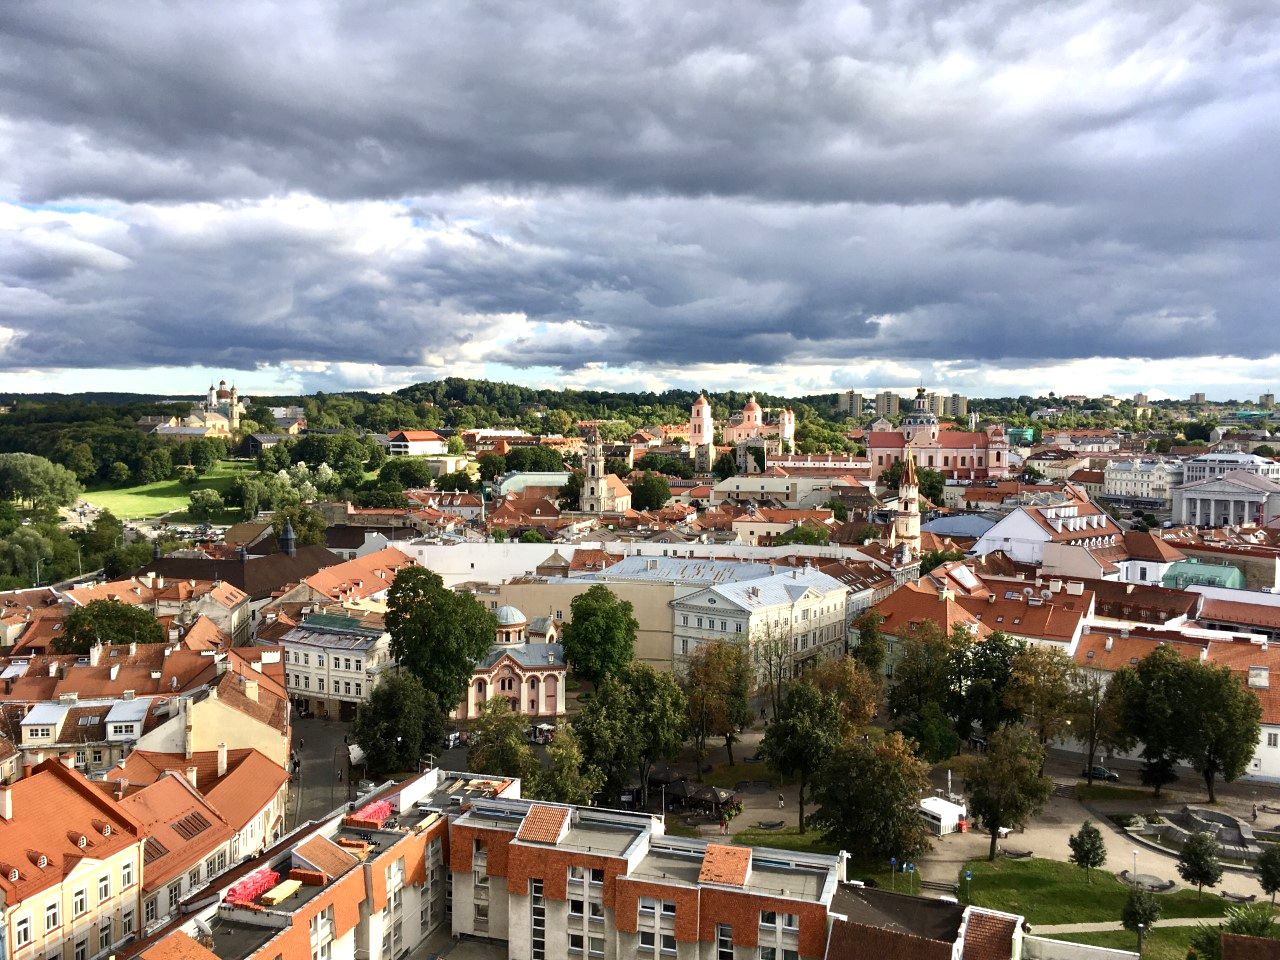 Ville verdoyante, Vilnius, la capitale de la Lituanie  est aussi, selon l'UNESCO, une "ville multiculturelle exceptionnelle, dans laquelle les influences de l'Ouest et de l'Est ont été fusionnées" (Photo PB)